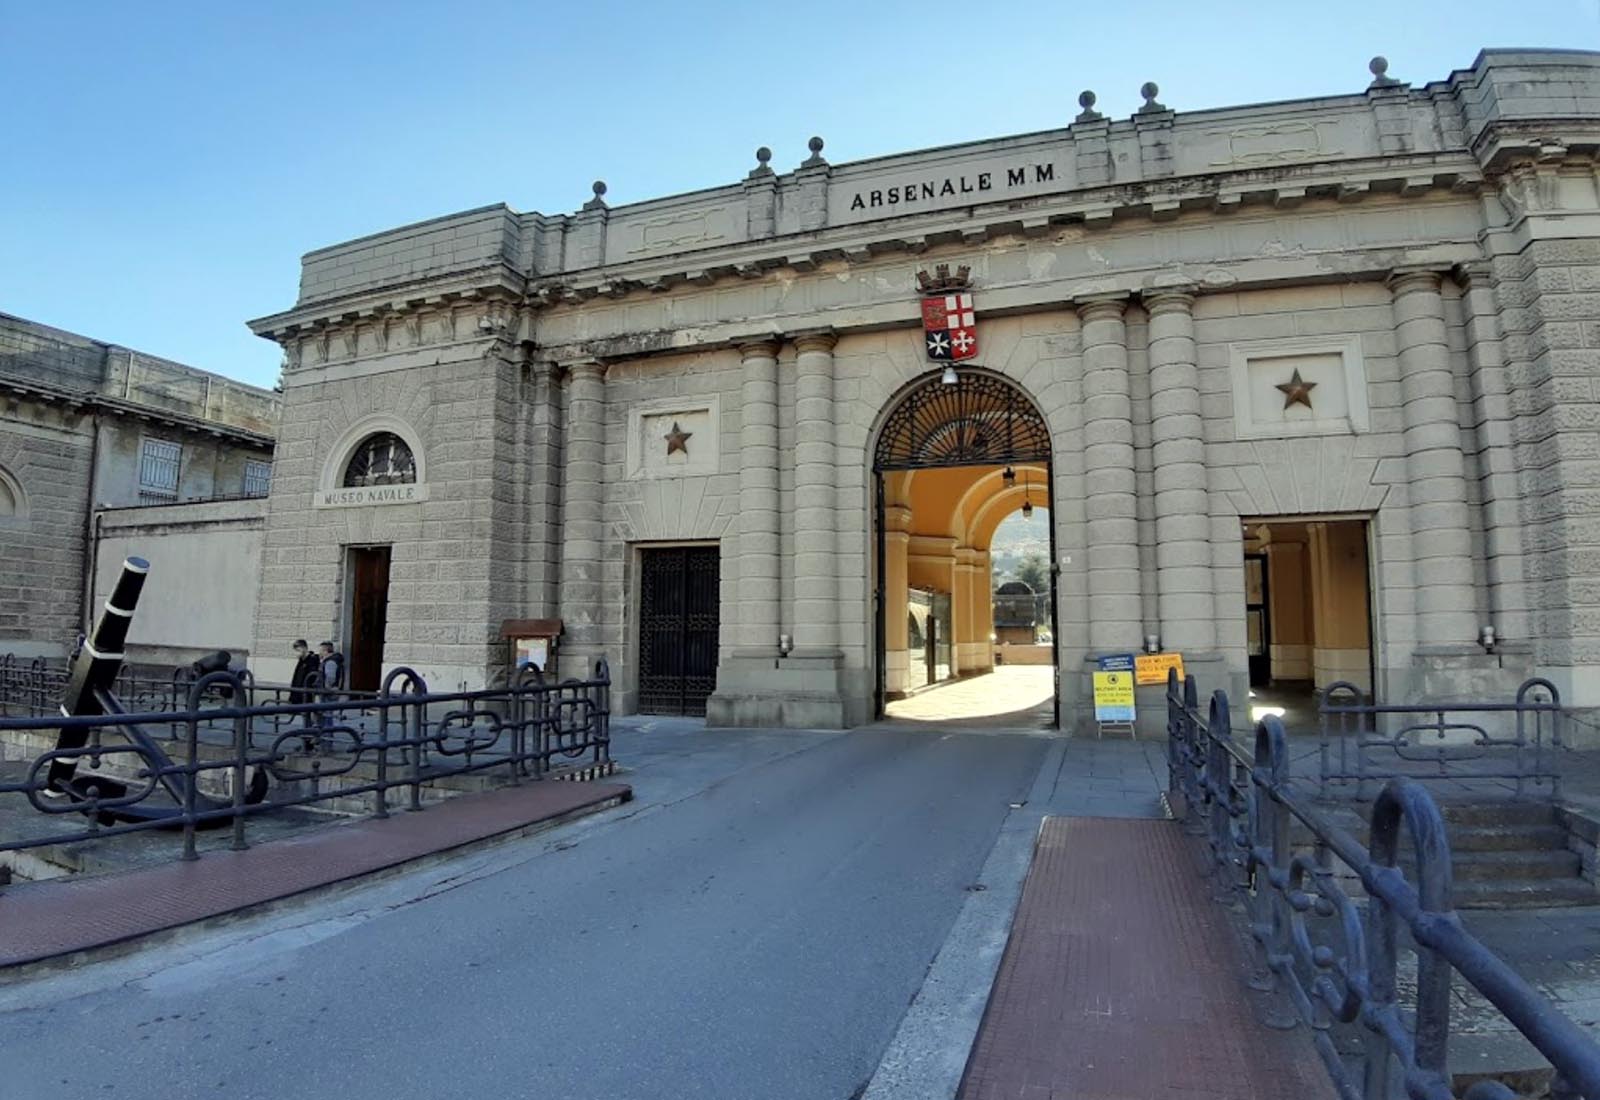 Officina di manutenzione presso l’Arsenale di La Spezia - L'ingresso all'arsenale